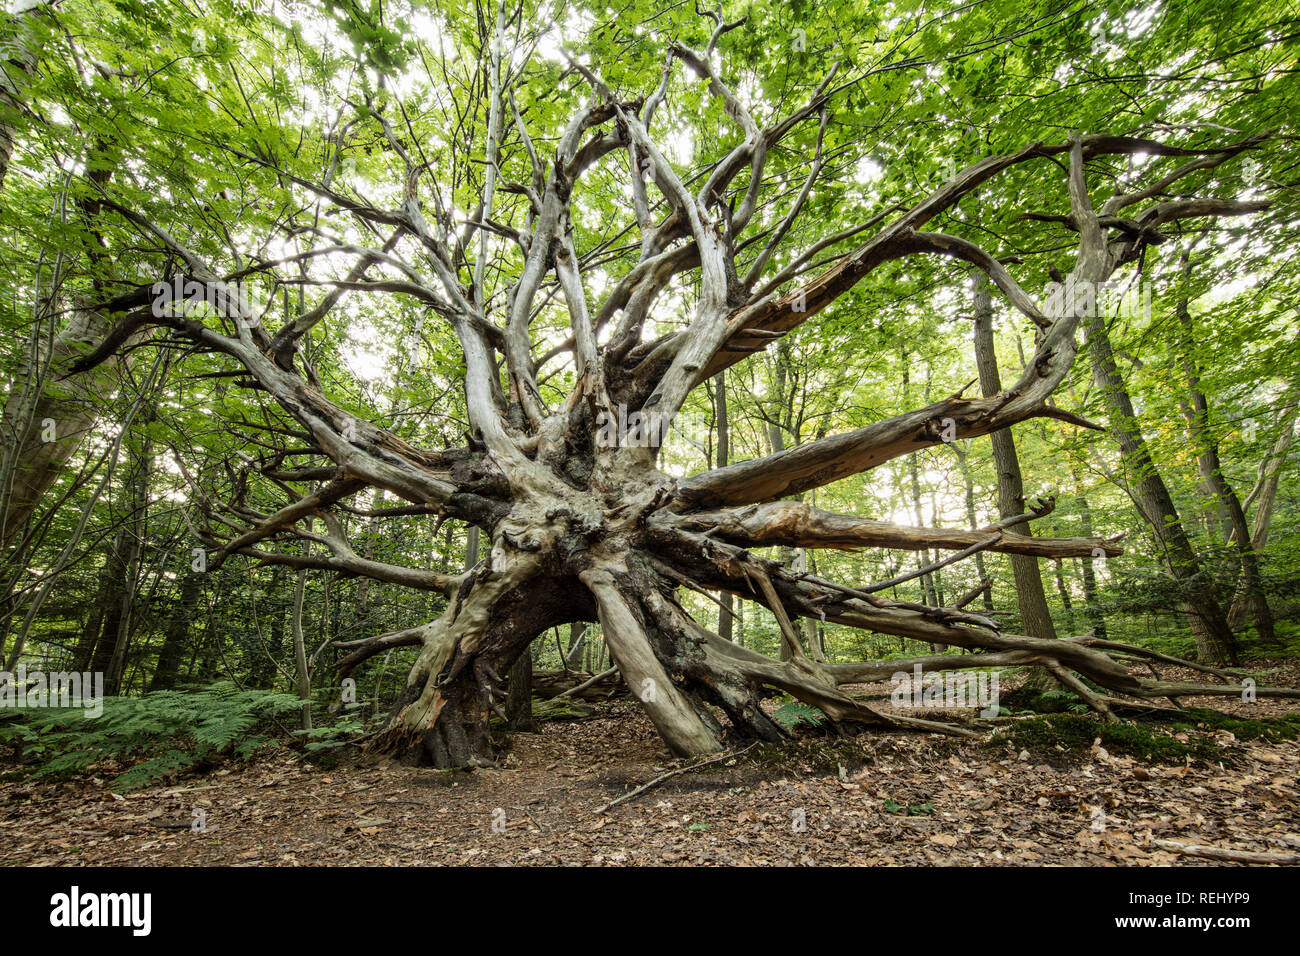 Hêtre les racines des arbres. Bantam domaine rural. 'S-Gravelandse Buitenplaatsen, 's-Graveland, aux Pays-Bas. Banque D'Images